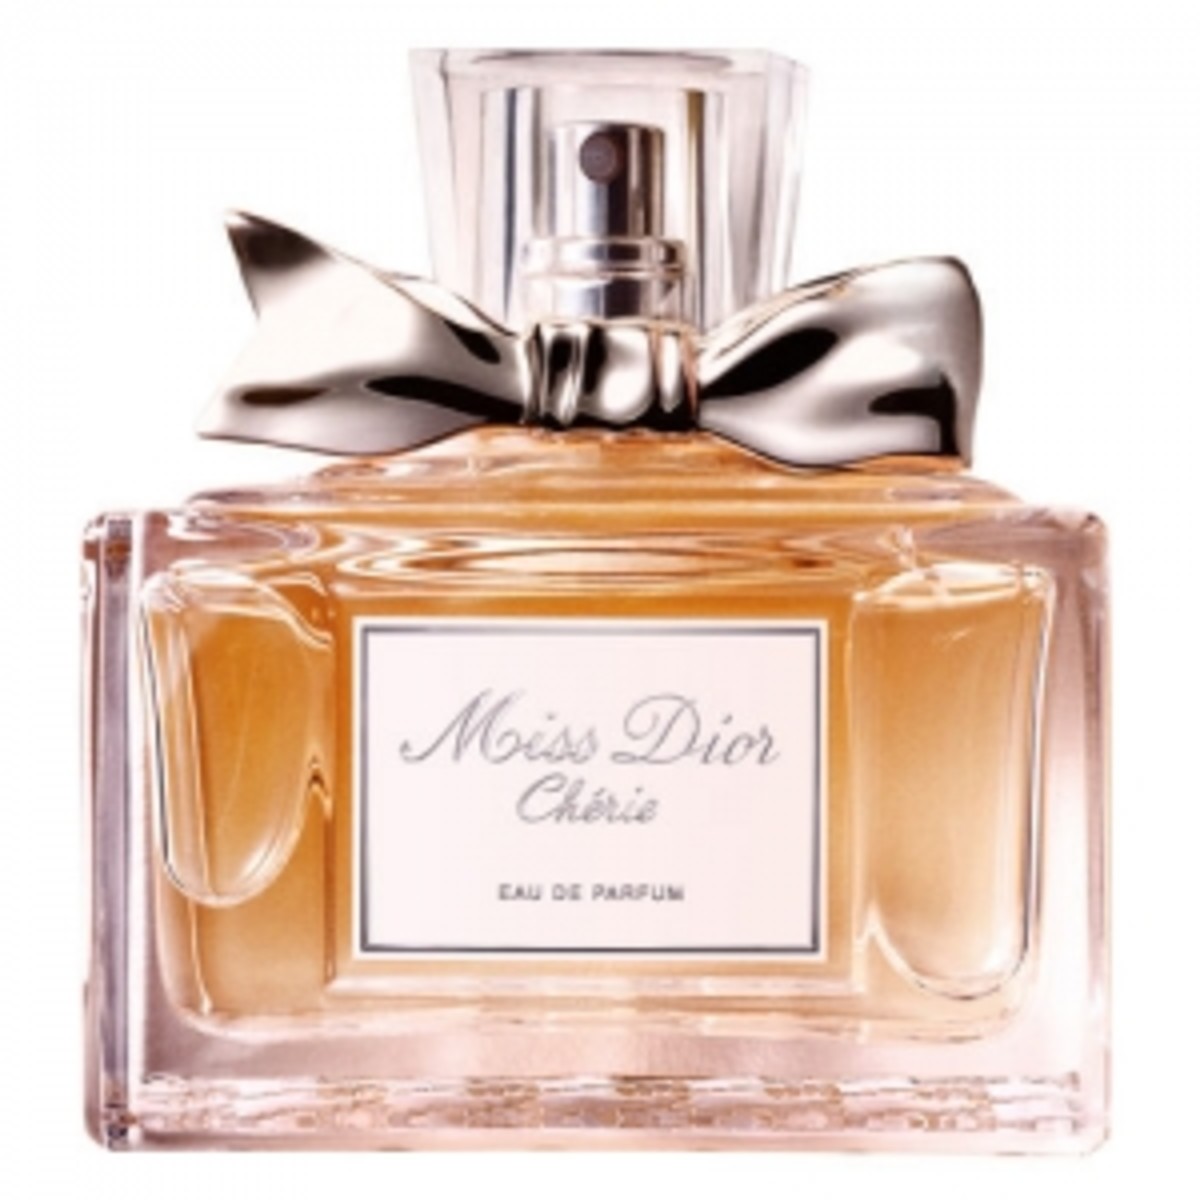 Miss Dior Cherie Eau de Parfum by Dior